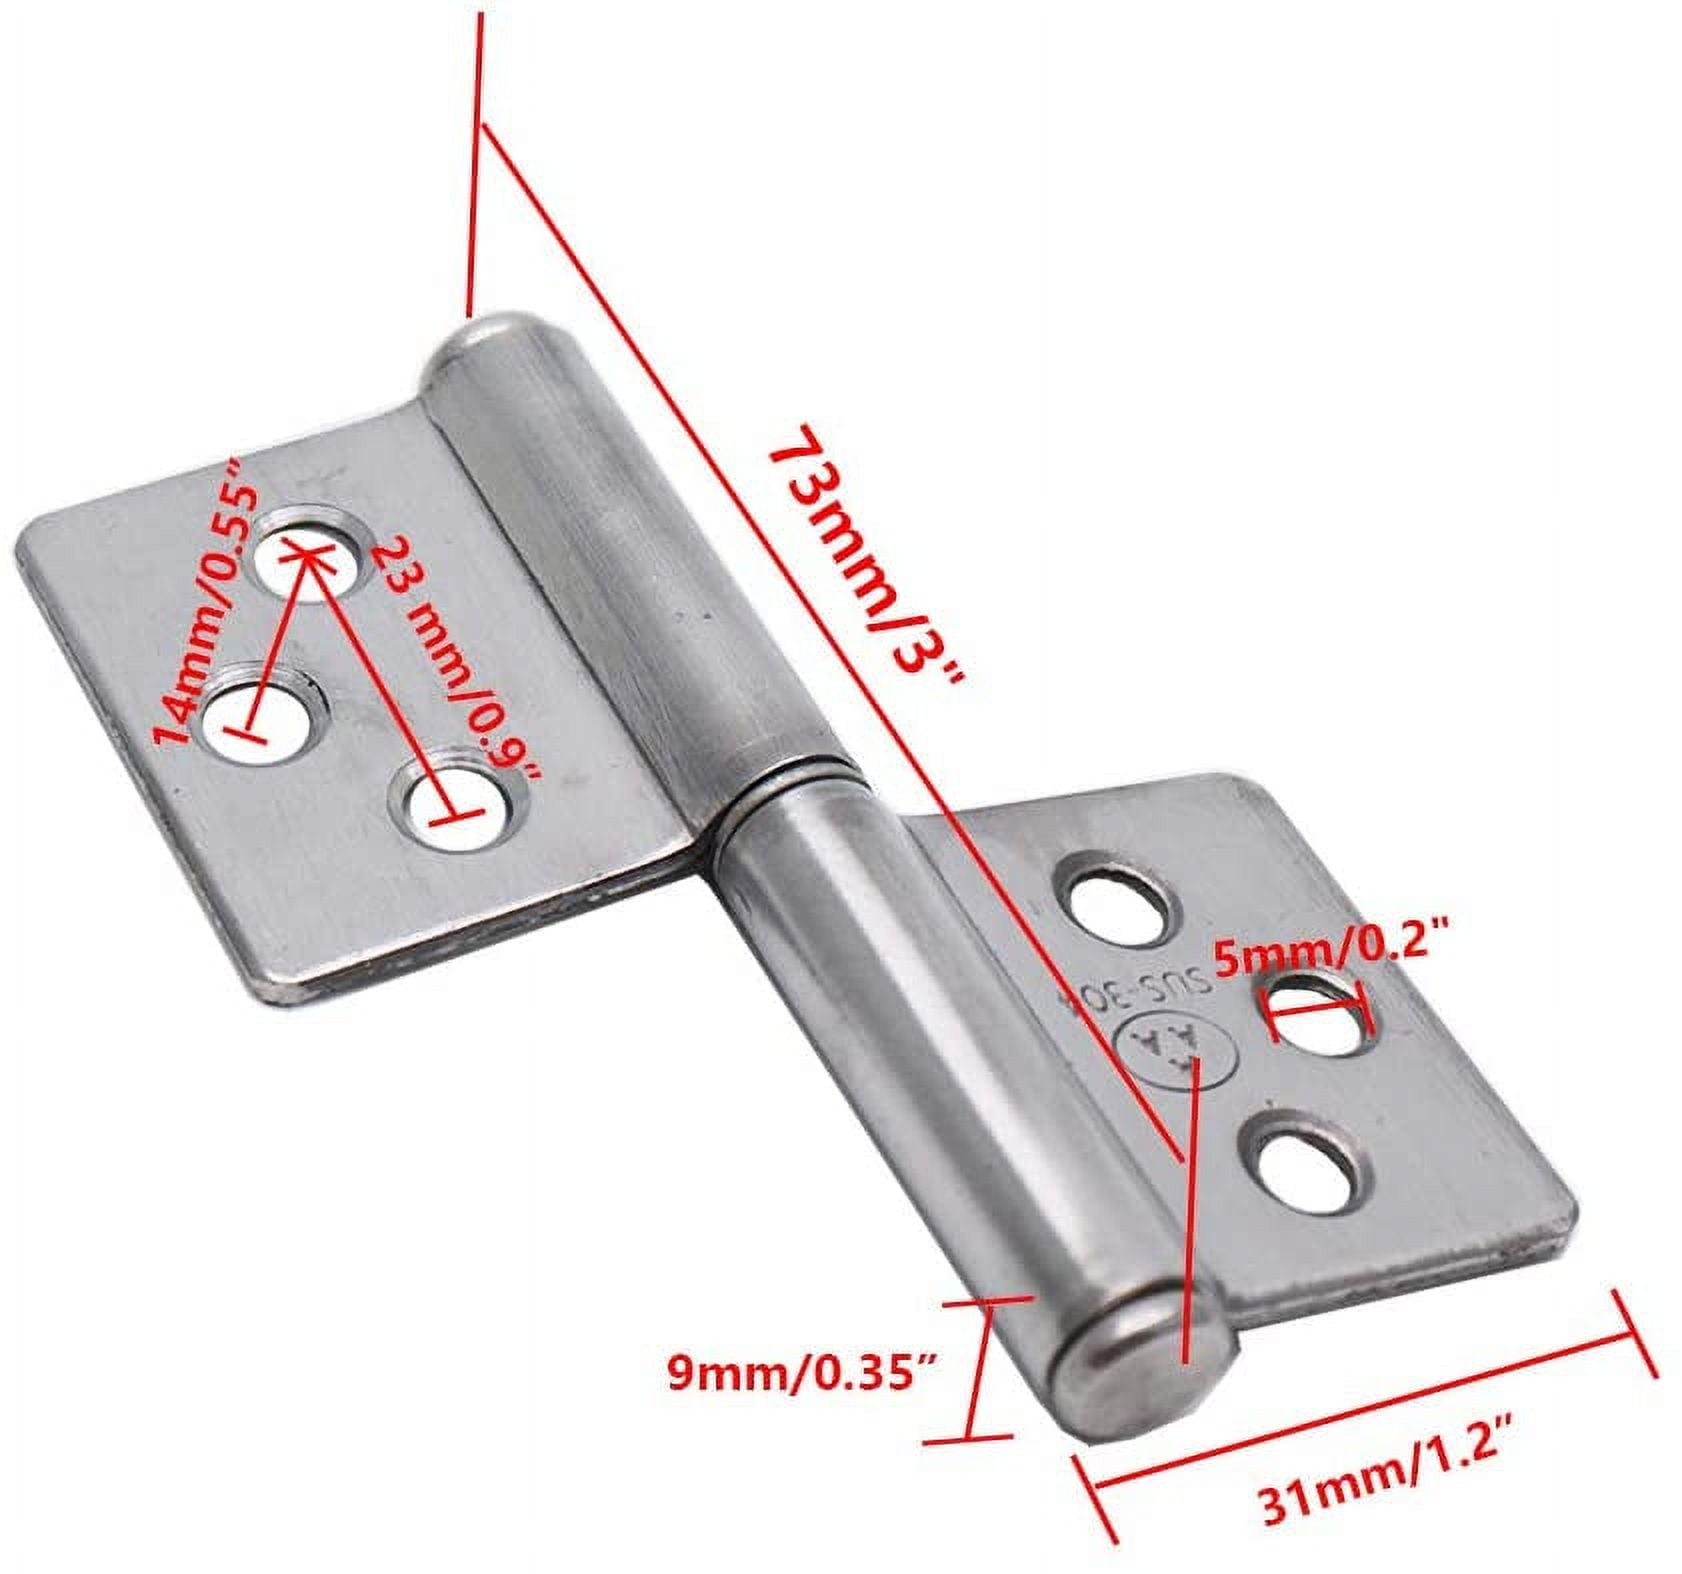 Rannb Spring Hinge Self Opening Hinge 2 Length Stainless Steel Door Hinge - Pack of 4